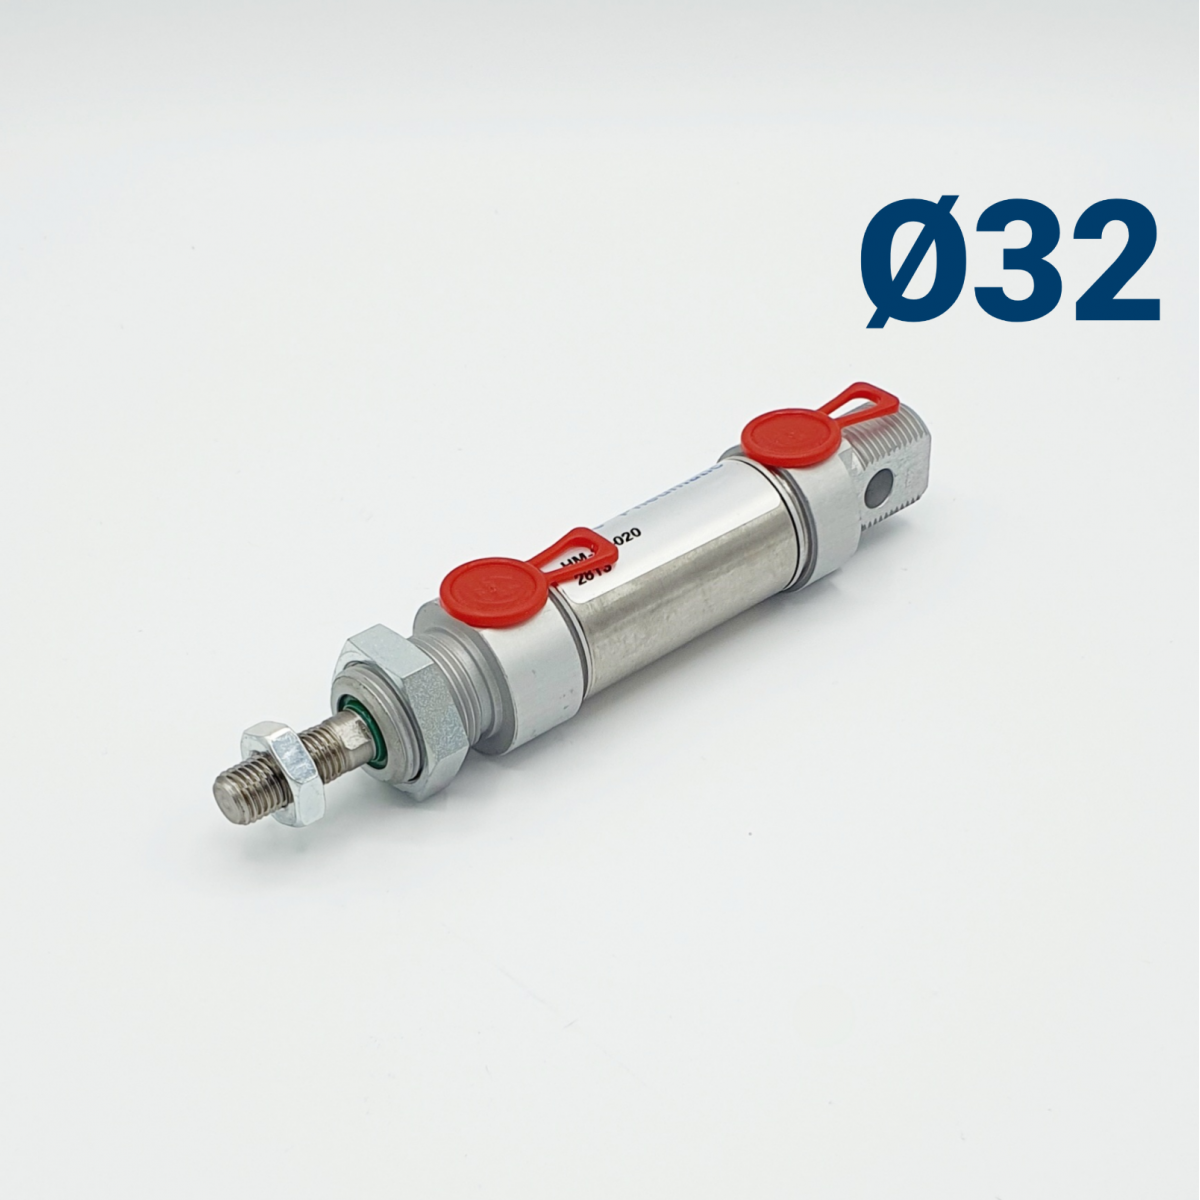 Zylinderserie HM (ISO 6432) D 32mm | Beta Online Shop